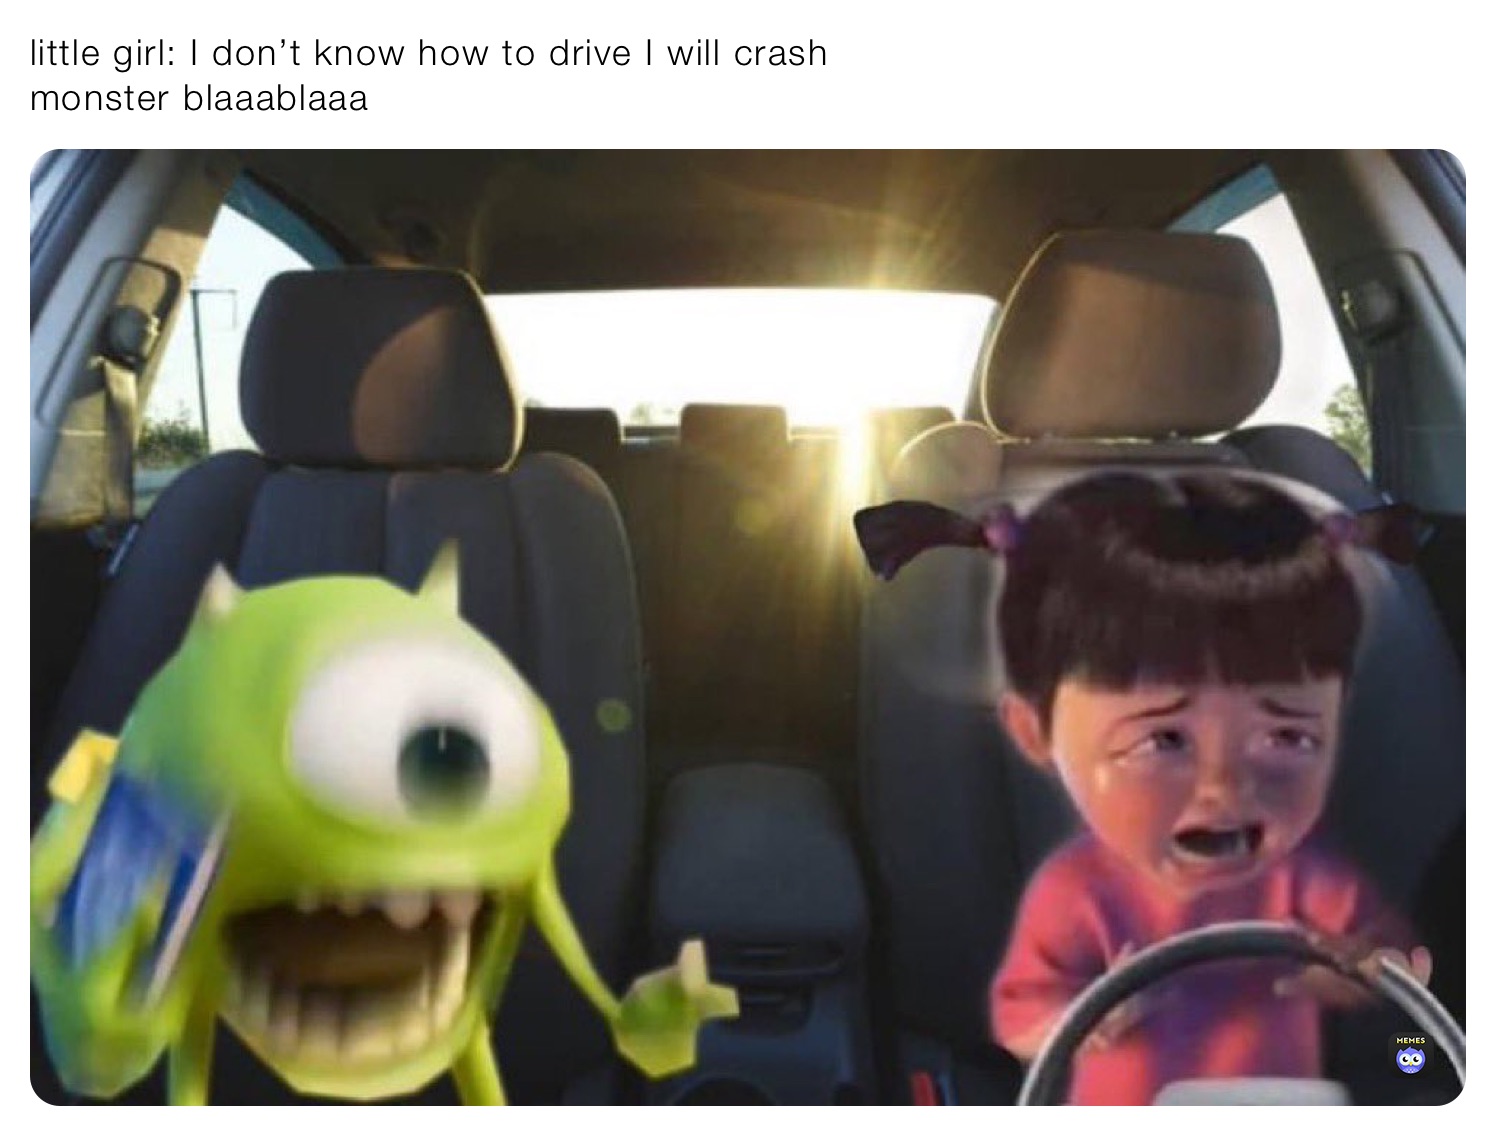 Crashed Car memes